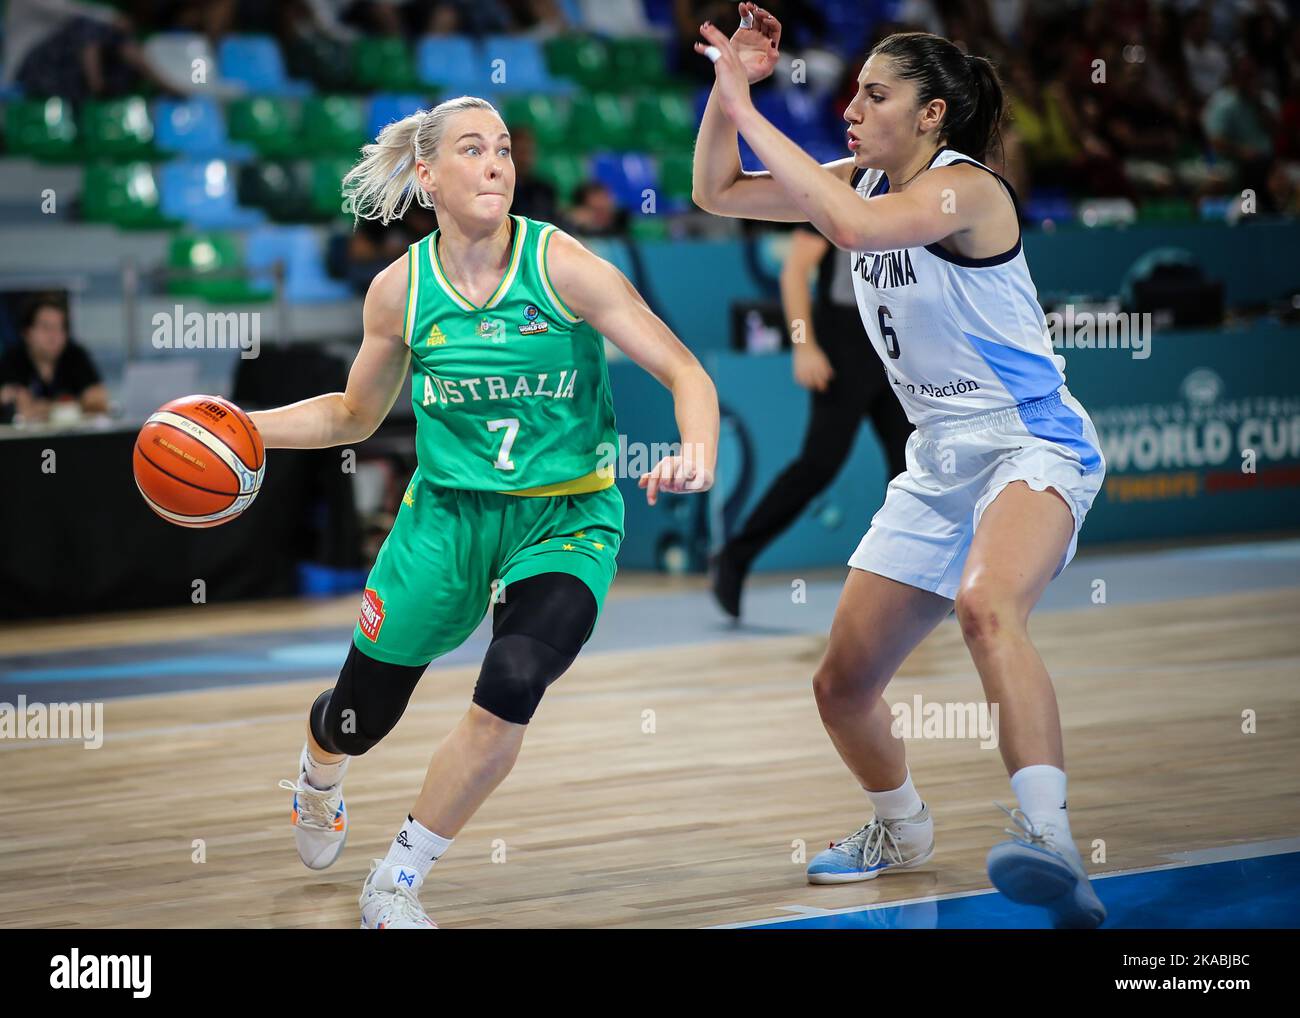 Espagne, Ténérife, 23 septembre 2018: Tess Madgen, joueuse de basket-ball australienne, en action lors de la coupe du monde de basket-ball féminine FIBA Banque D'Images